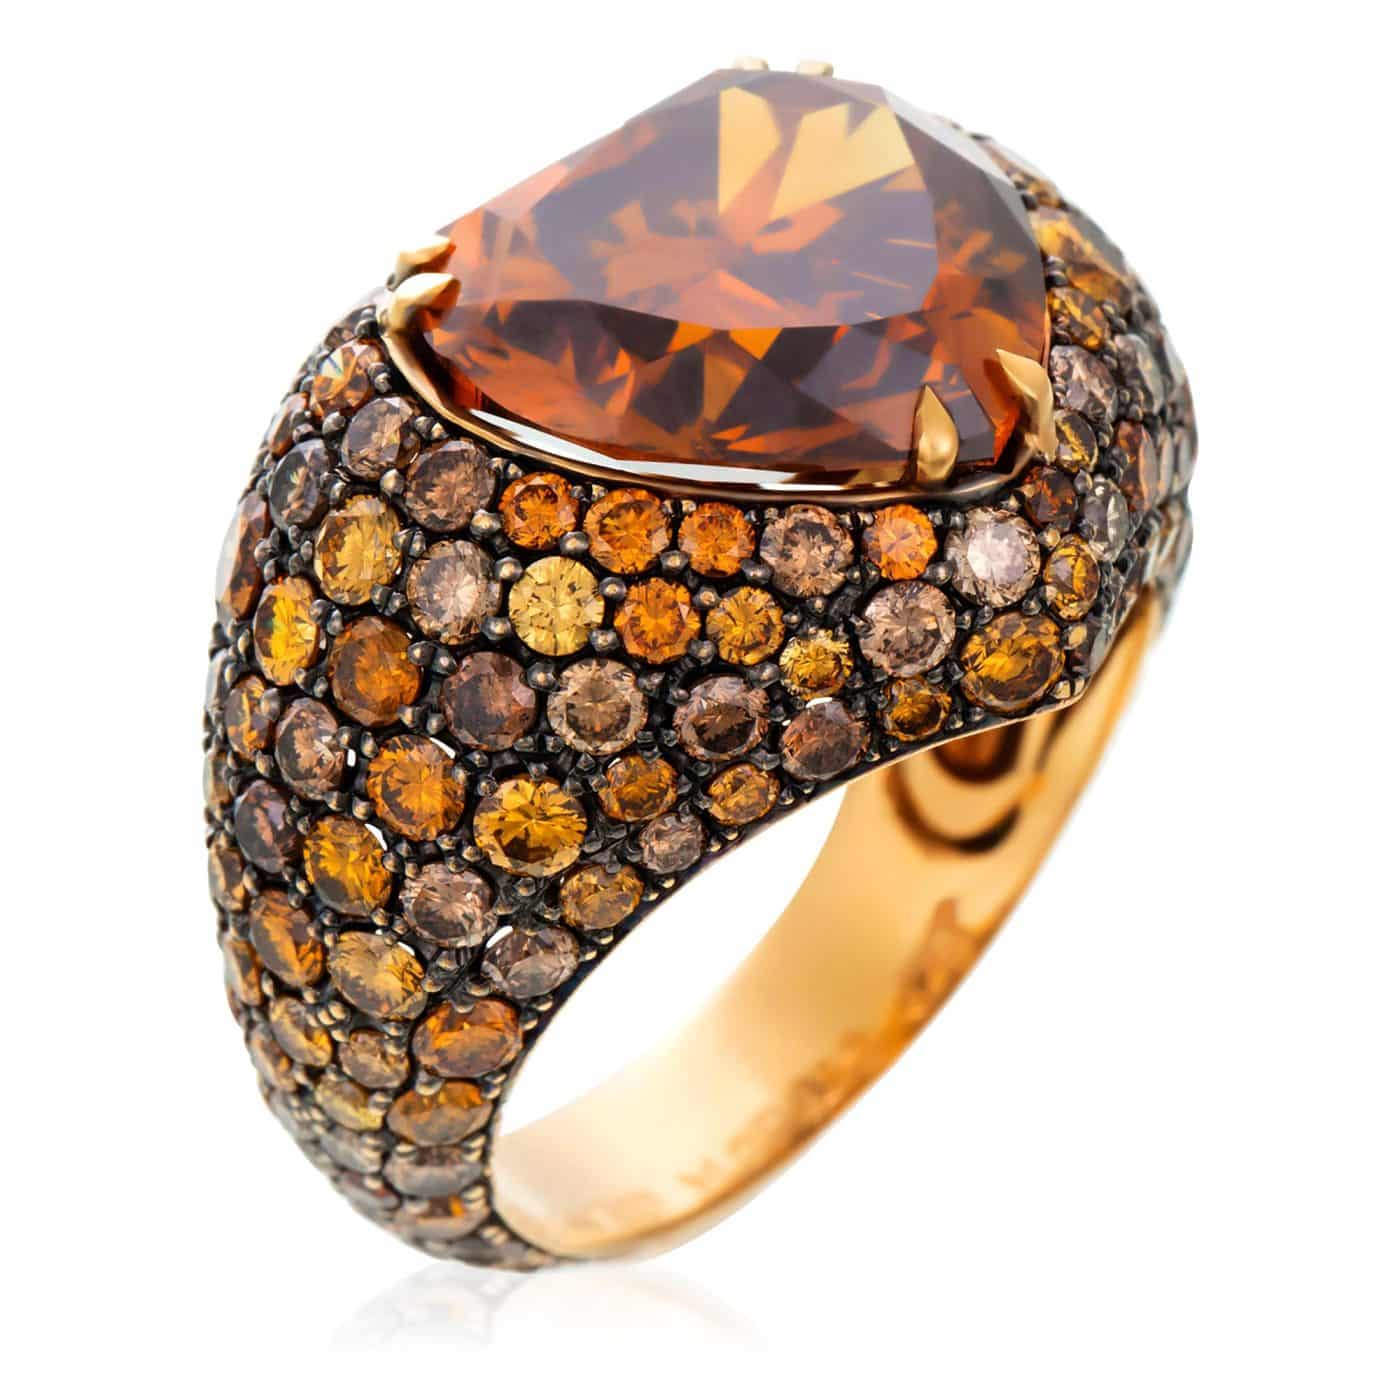 GIA-zertifizierter Cocktailring mit extravagantem herzförmigem 7,08-Karat-Diamanten in orange-braunen Farbtönen